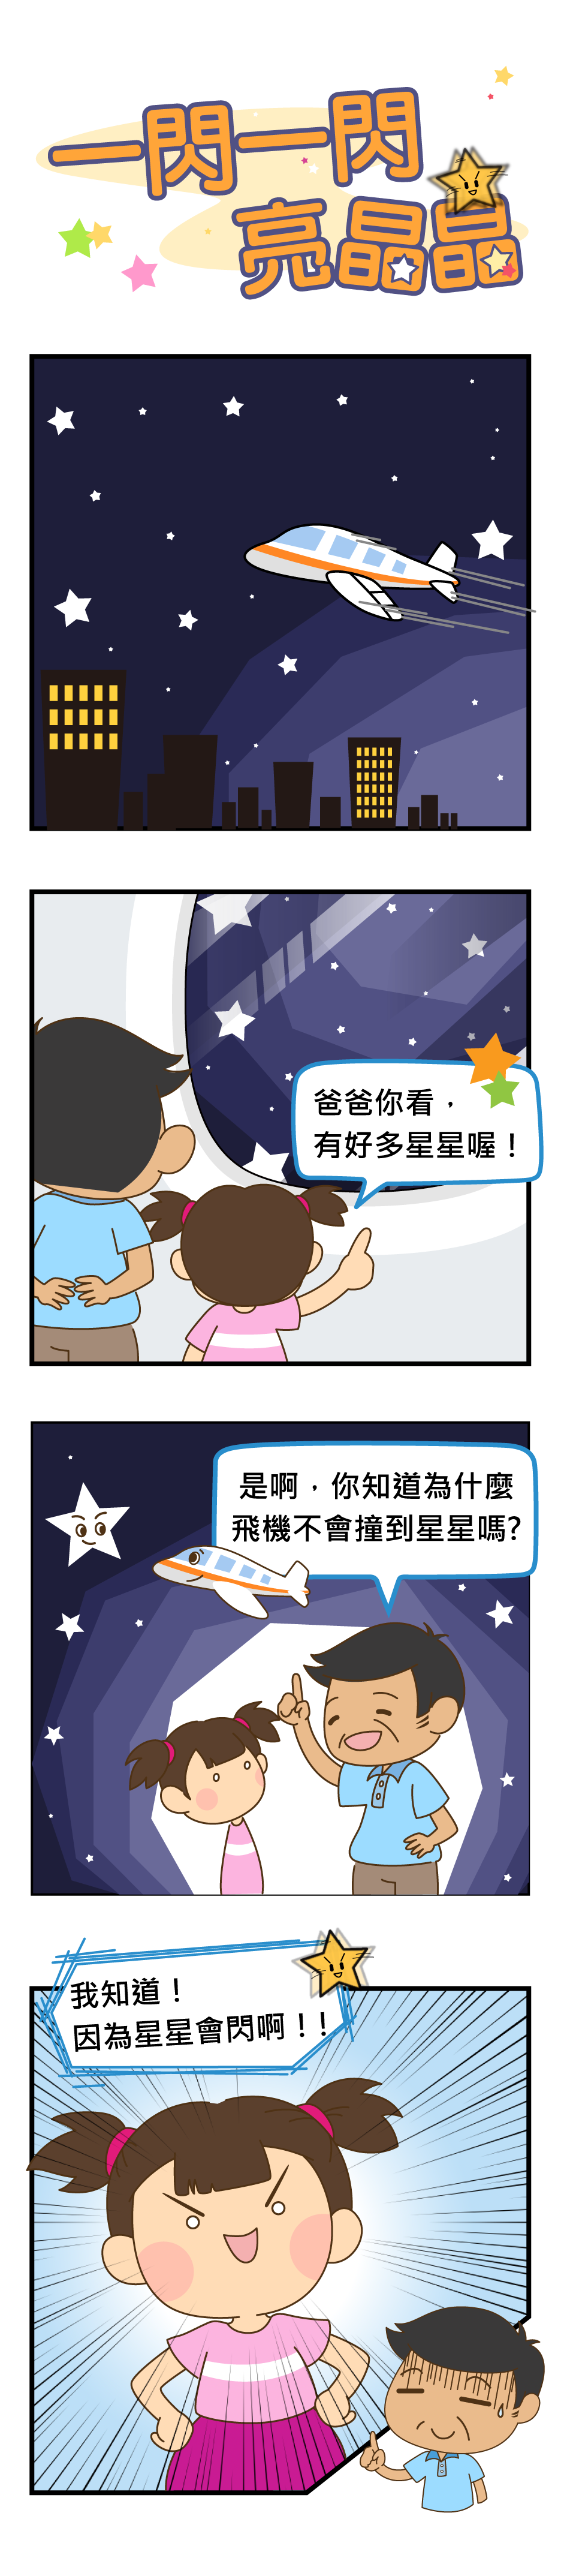 四格漫畫：一閃一閃亮晶晶。飛機上一對父女看著窗外星星，爸爸問妹妹為什麼飛機不會撞到星星？結果妹妹很得意的說：因為星星會閃啊！